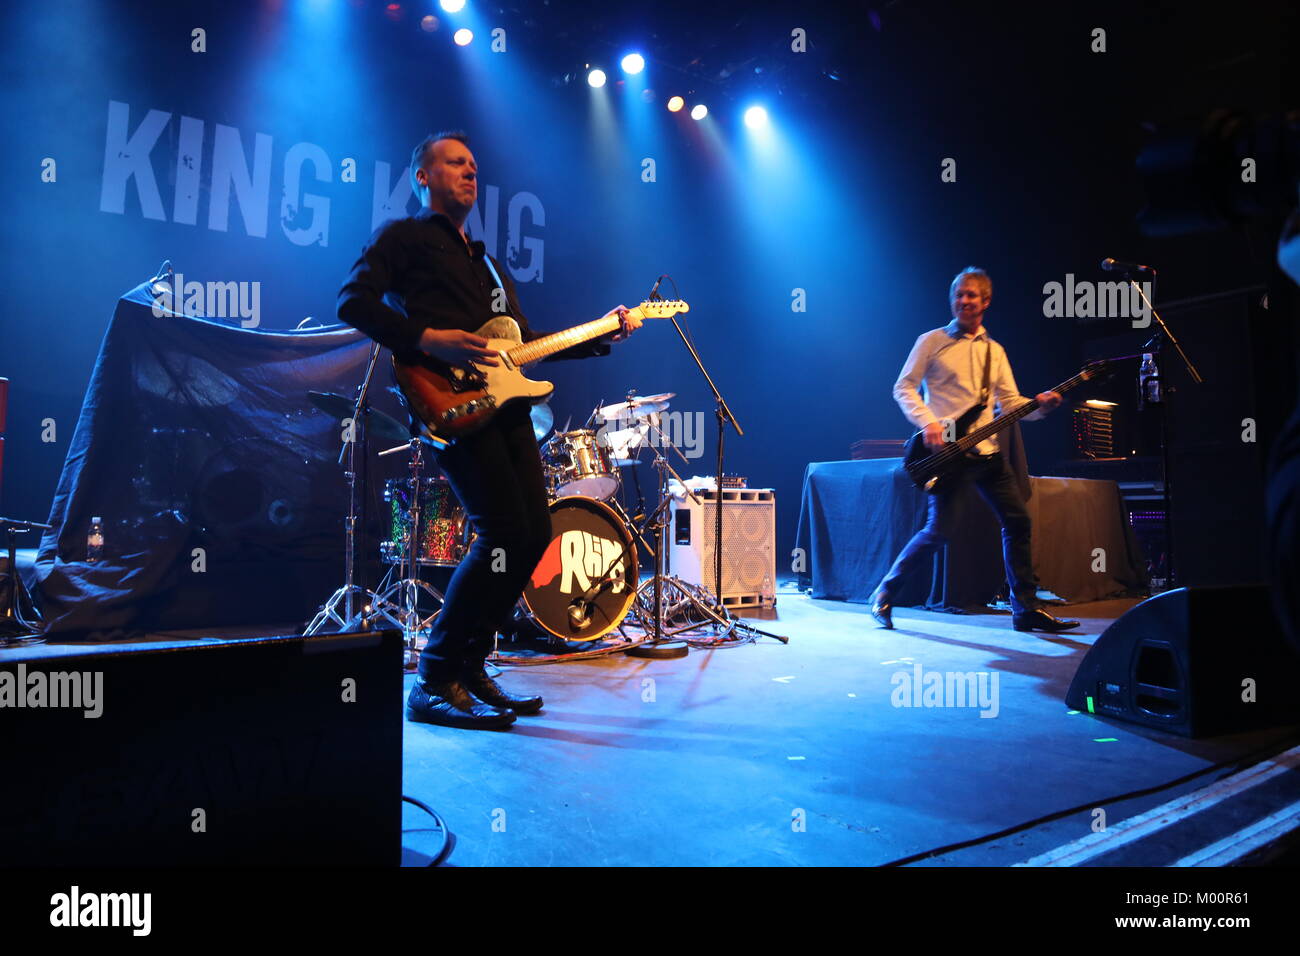 Londres, Royaume-Uni. 17 Jan, 2018. Le groupe de blues et rock King King a commencé leur mois de longue tournée à l'O2 Shepherd's Bush Empire. La visite vous mènera à de nombreux sites au Royaume-Uni, aux Pays-Bas et en Allemagne. Ils ont été soutenus par le groupe rock Rhino's Revenge. Credit : Uwe Deffner/Alamy Live News Banque D'Images